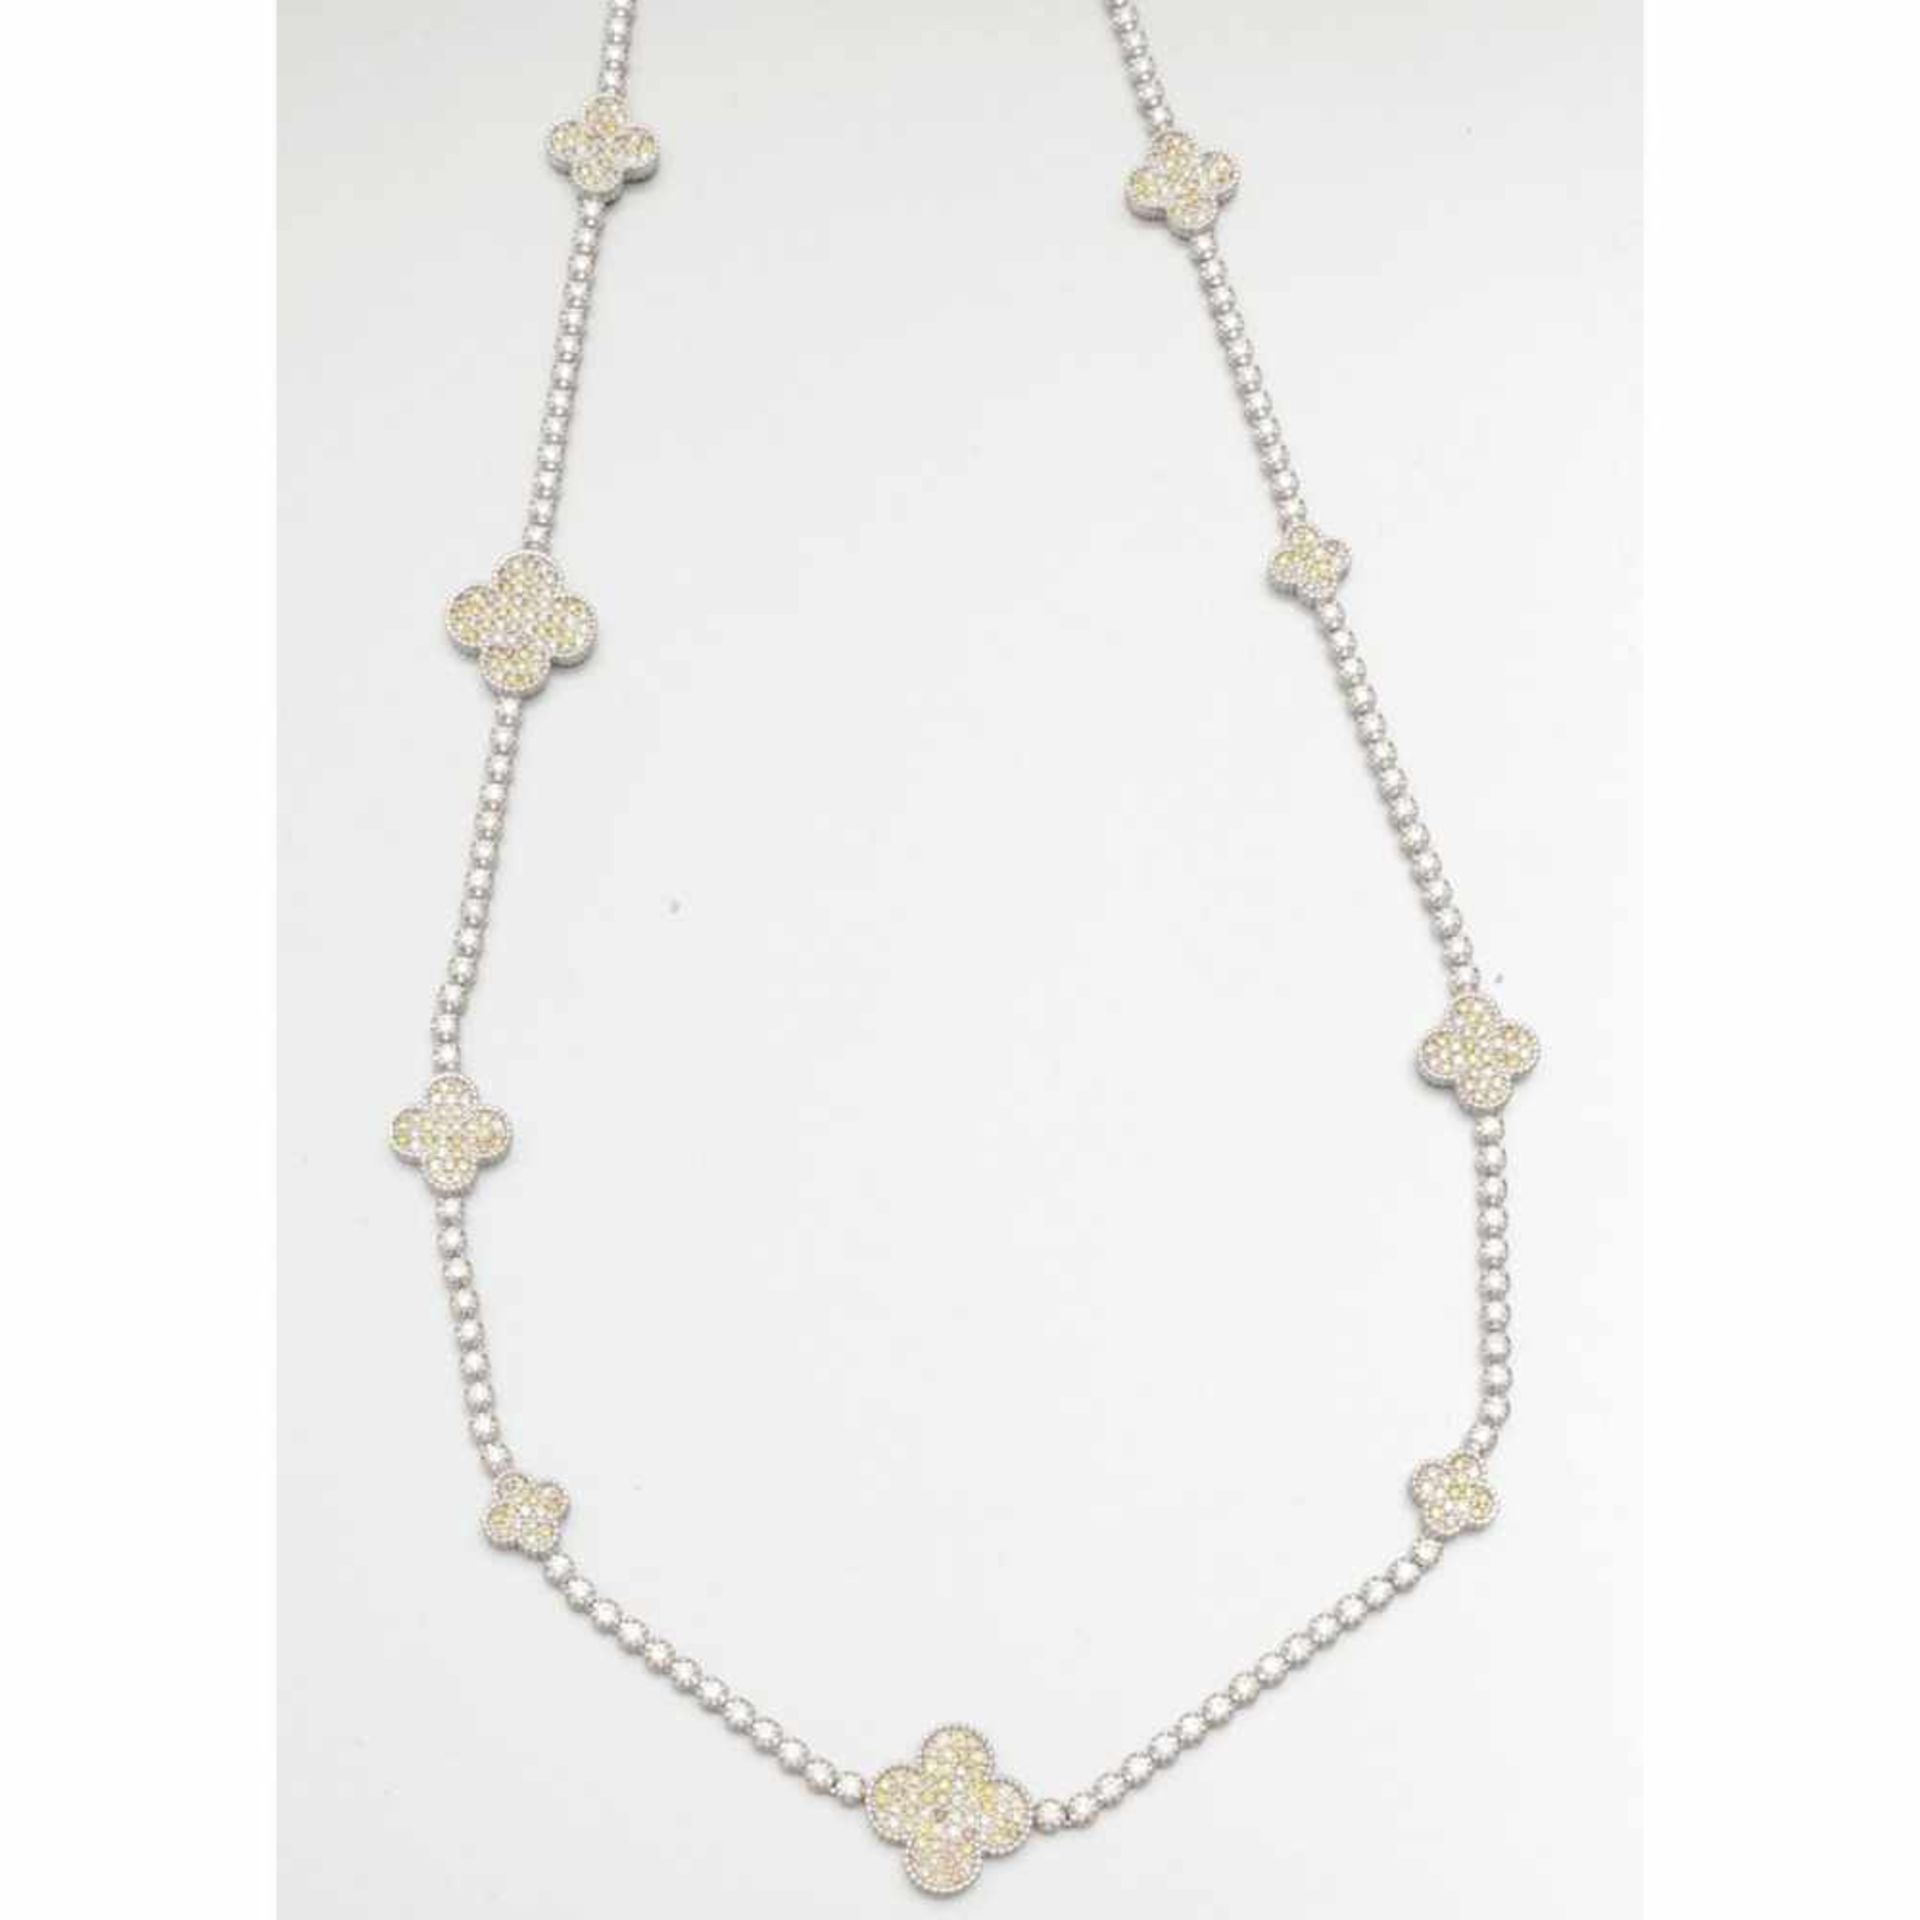 Langes, modernes Diamant-Collier in Kleeblatt-Form750/- Weißgold, gestempelt. Gewicht: 43,6g. Div. - Image 2 of 2